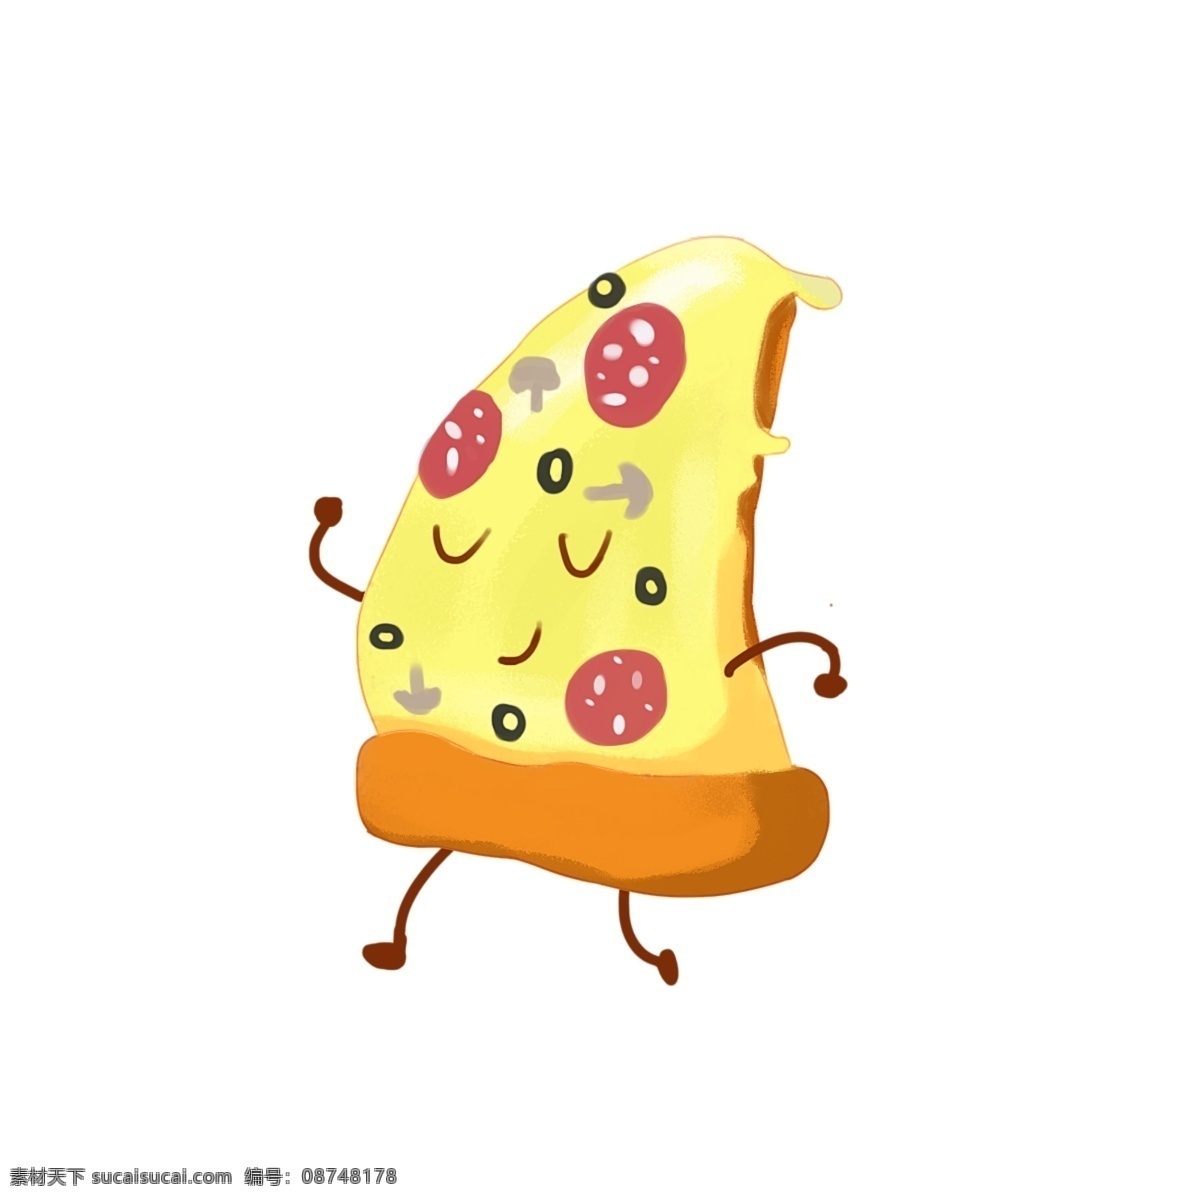 卡通 手绘 披萨 艺术 极 简 主义 食物 图标 可爱 绘画 装饰 时尚 元素